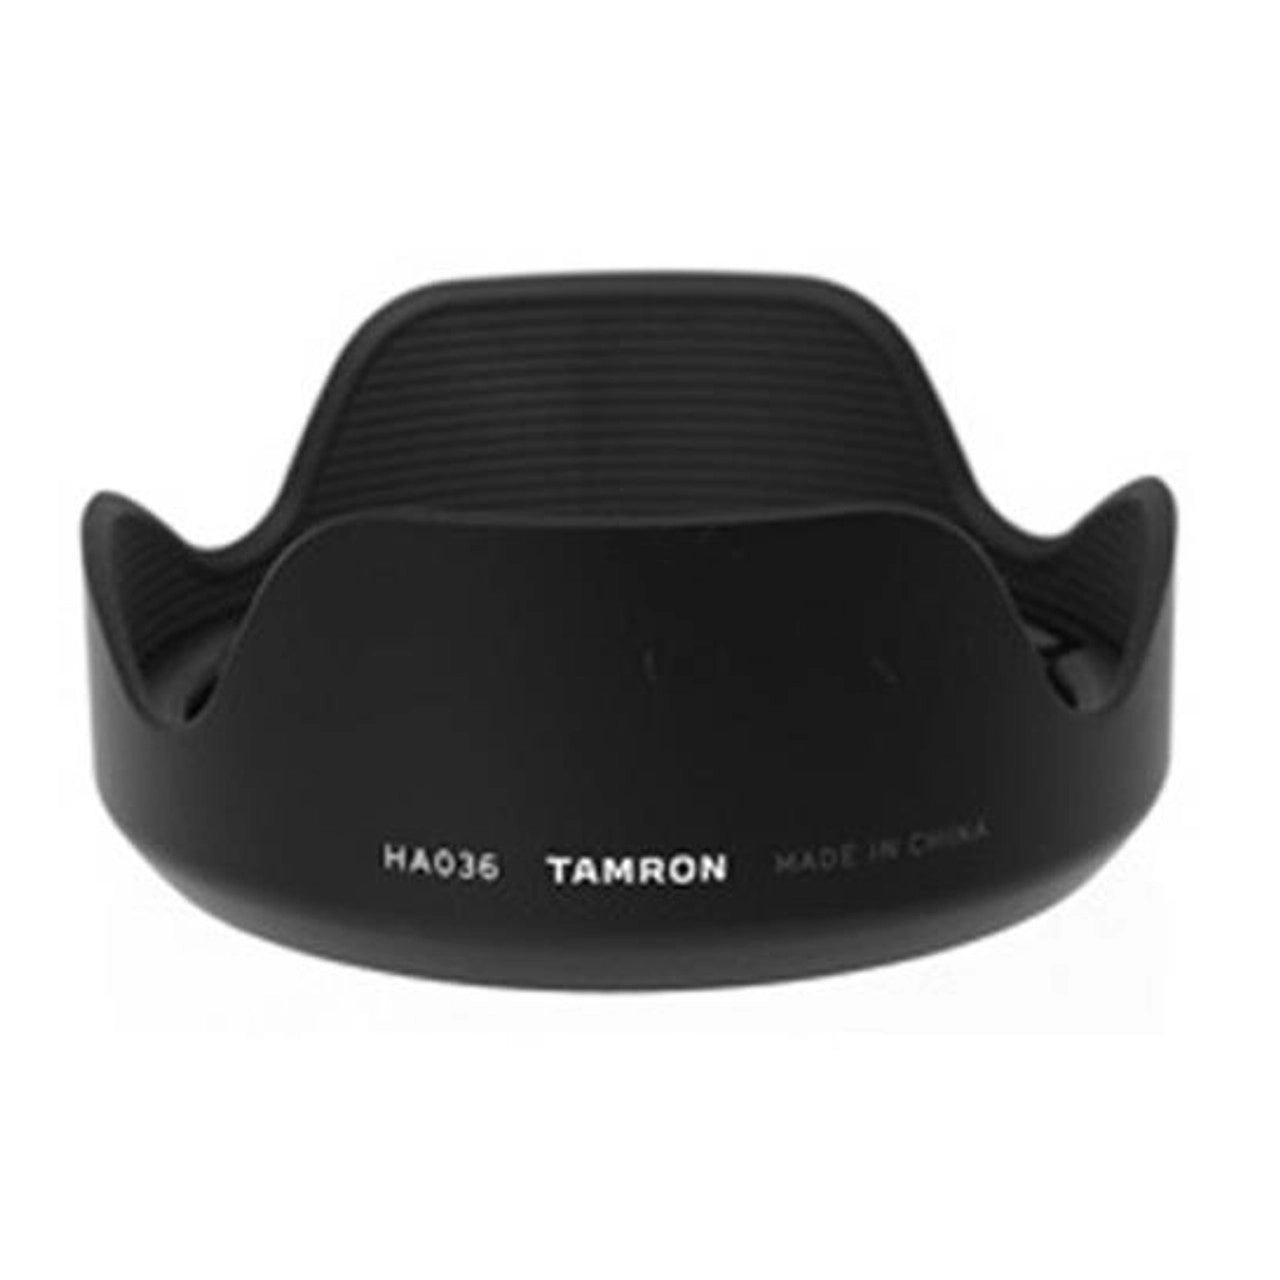 Tamron HA036 Lens Hood for 28-75mm 18-300mm 28-300mm lenses